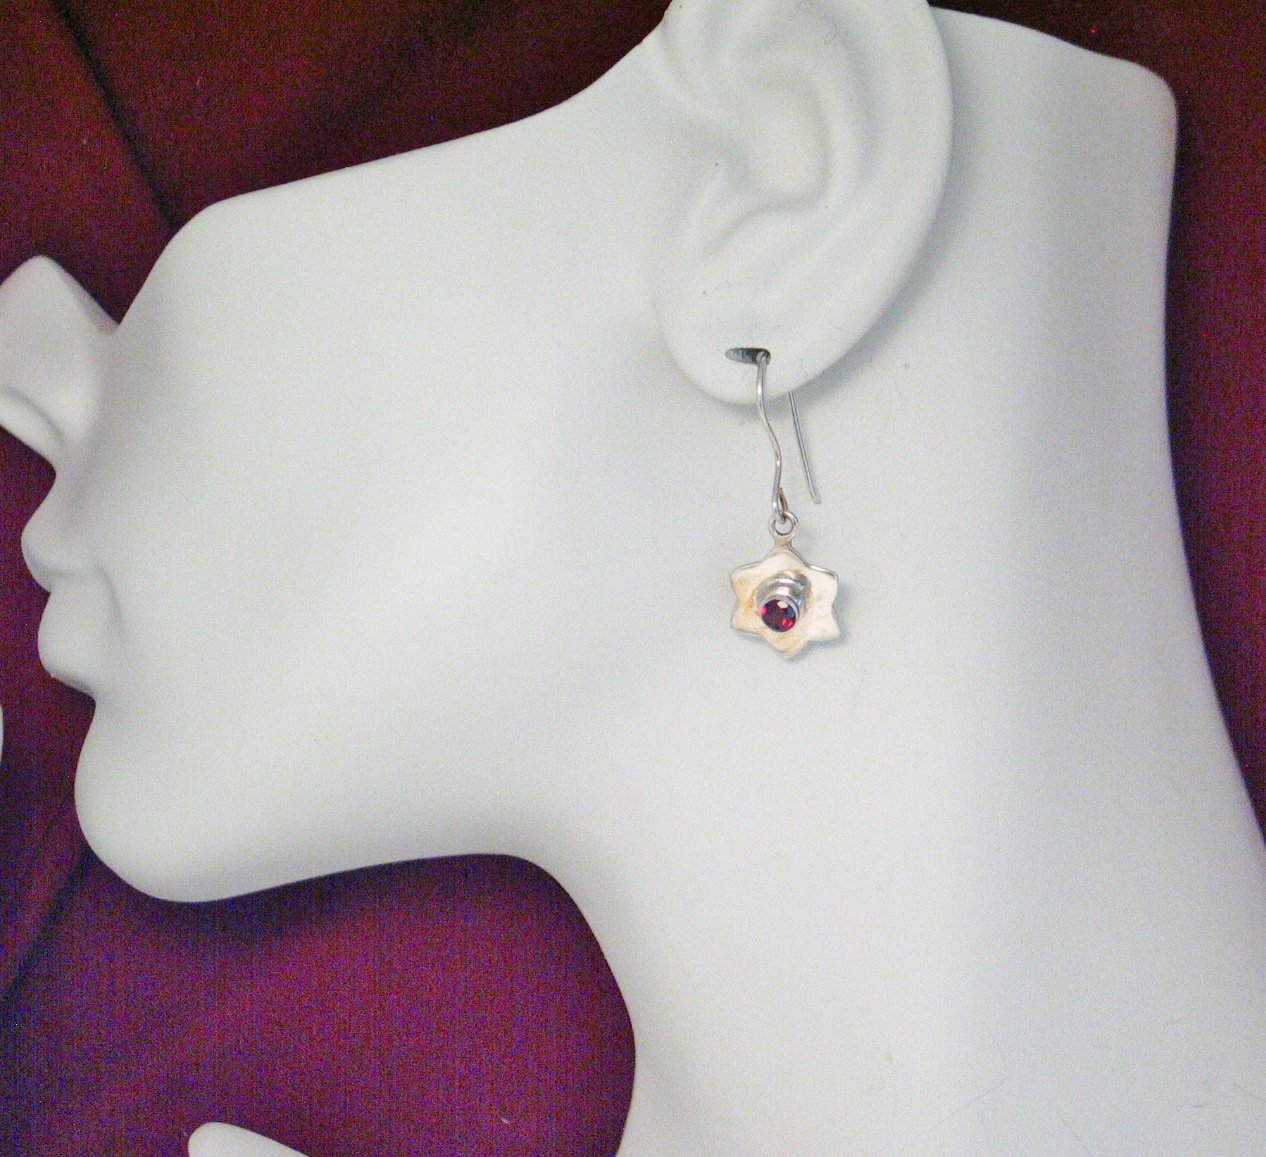 Celebrate 4th of July - Womens Star Pendant Earrings Set w/ Red Garnet Gemstone Sterling Silver - Blingschlingers Jewelry